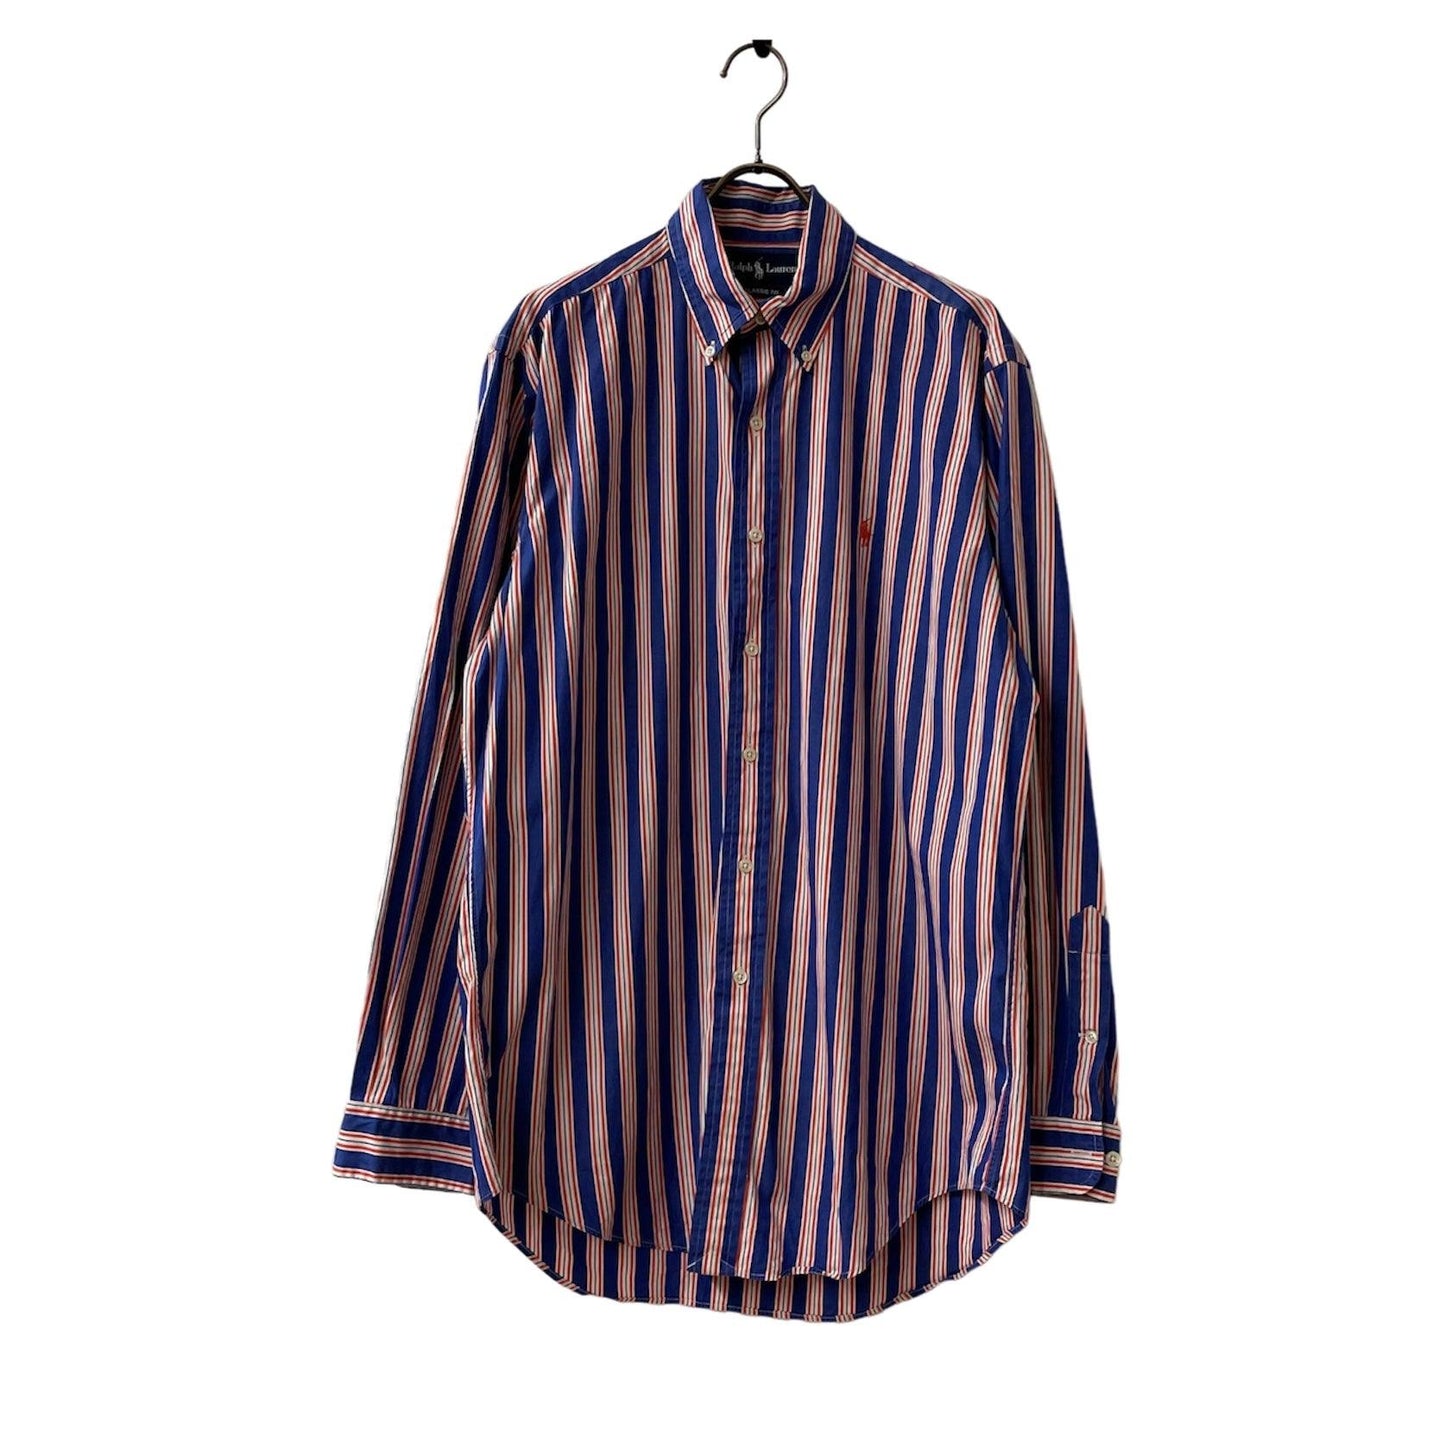 Ralph Lauren classic Fit striped shirt shirt BD shirt button down